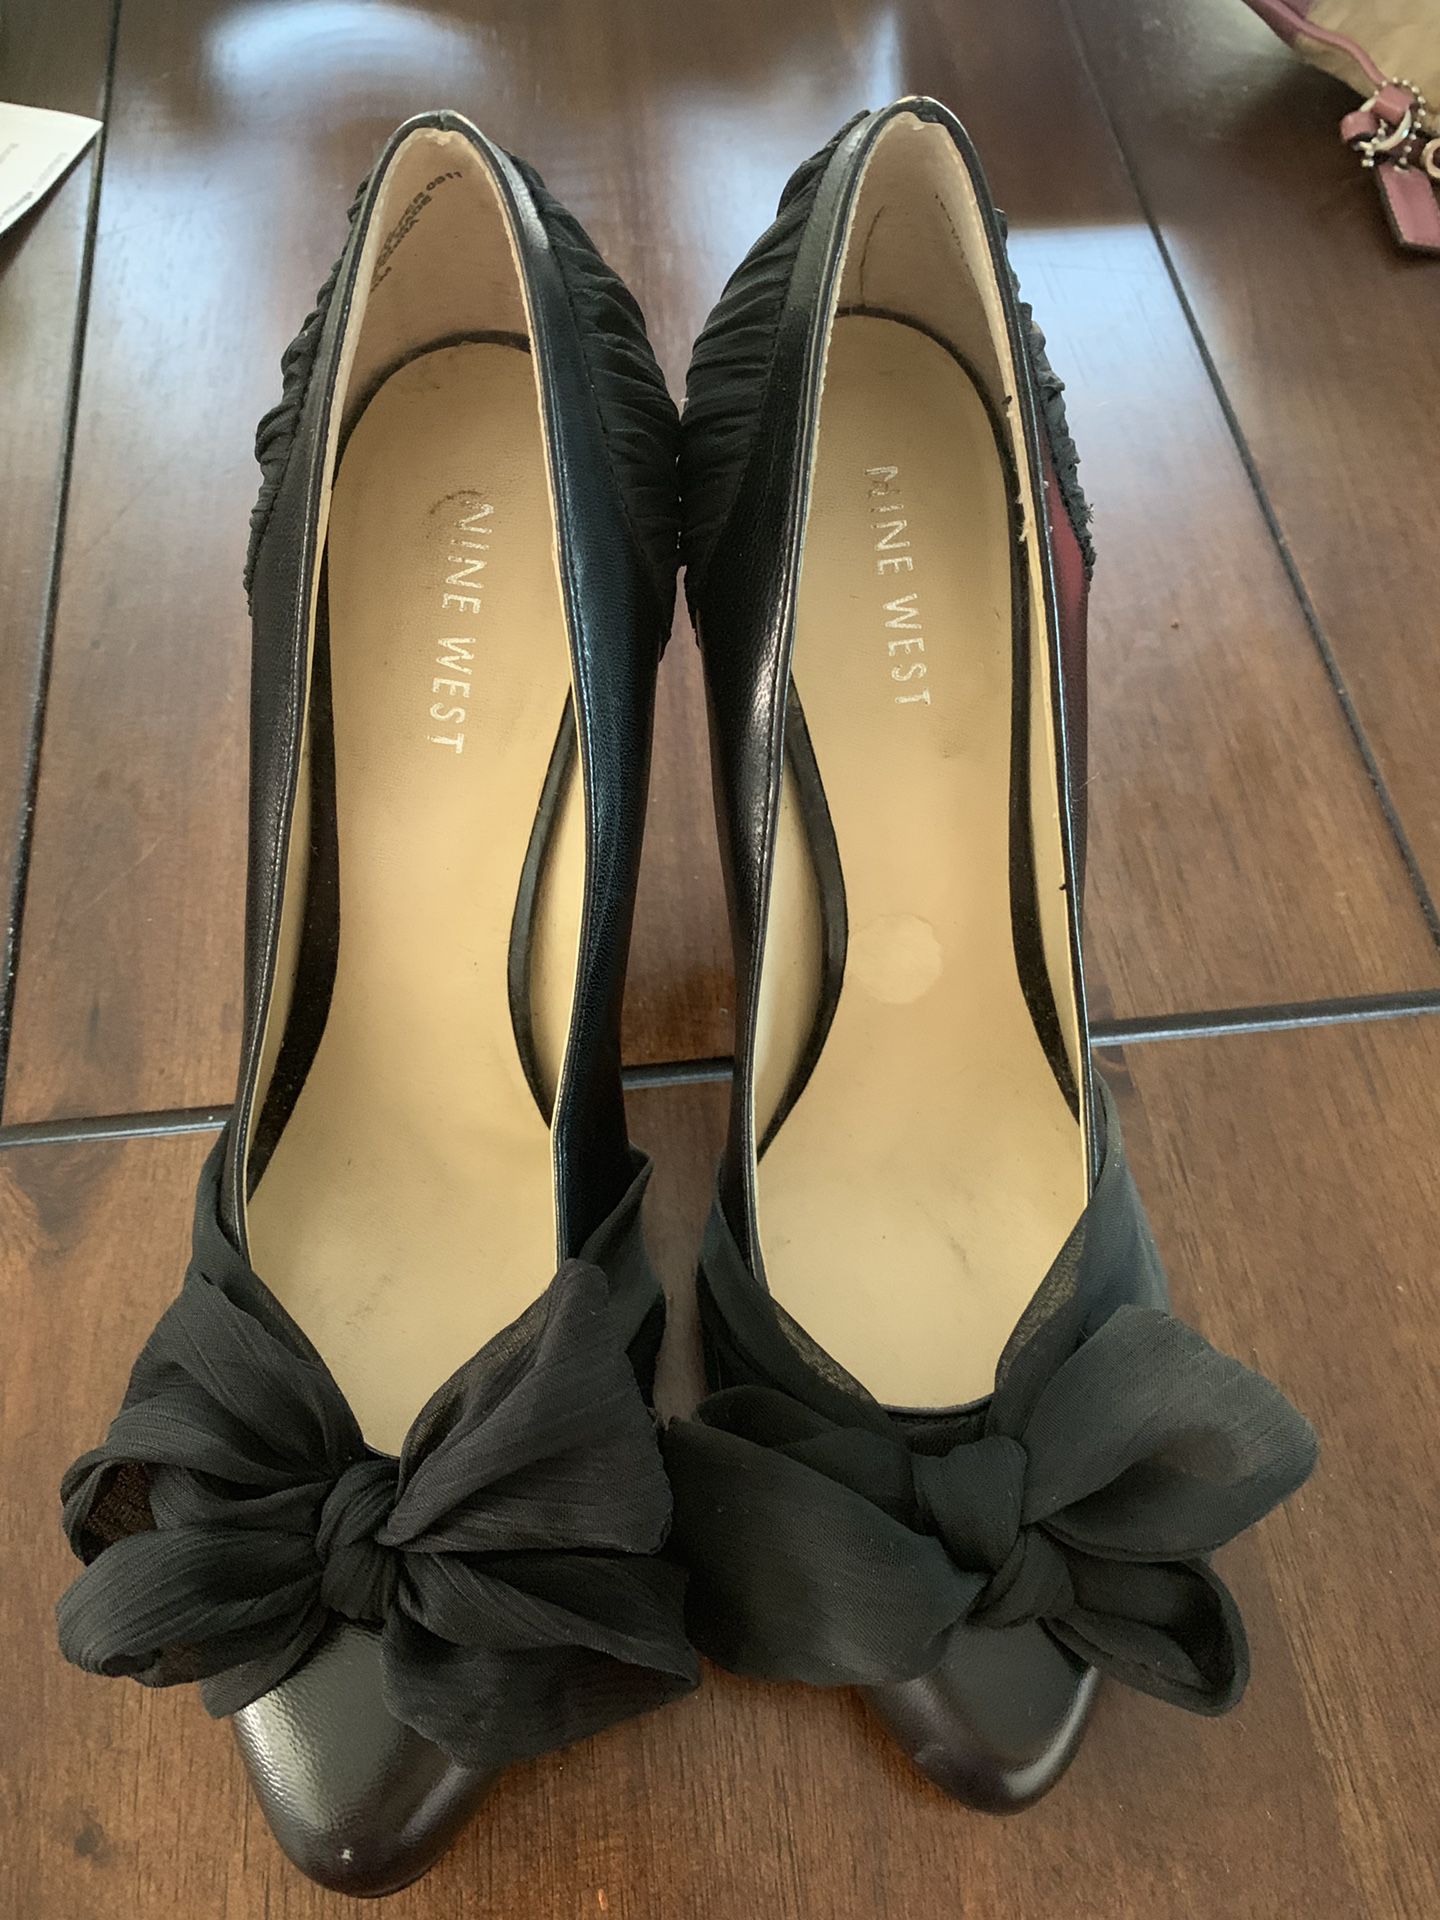 Nine West black heels